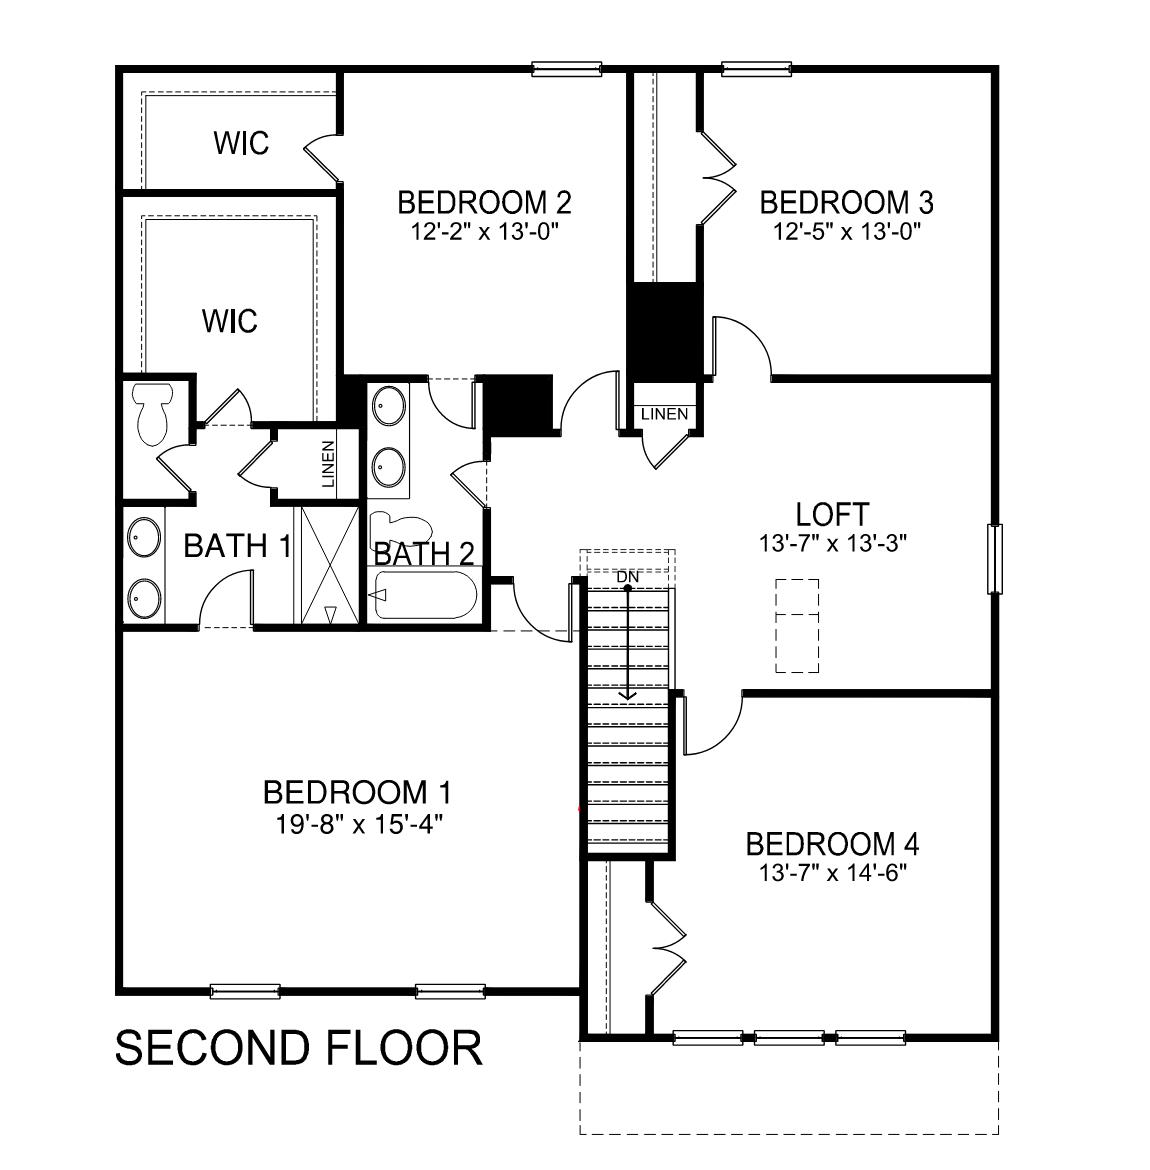 Biltmore second floor plan